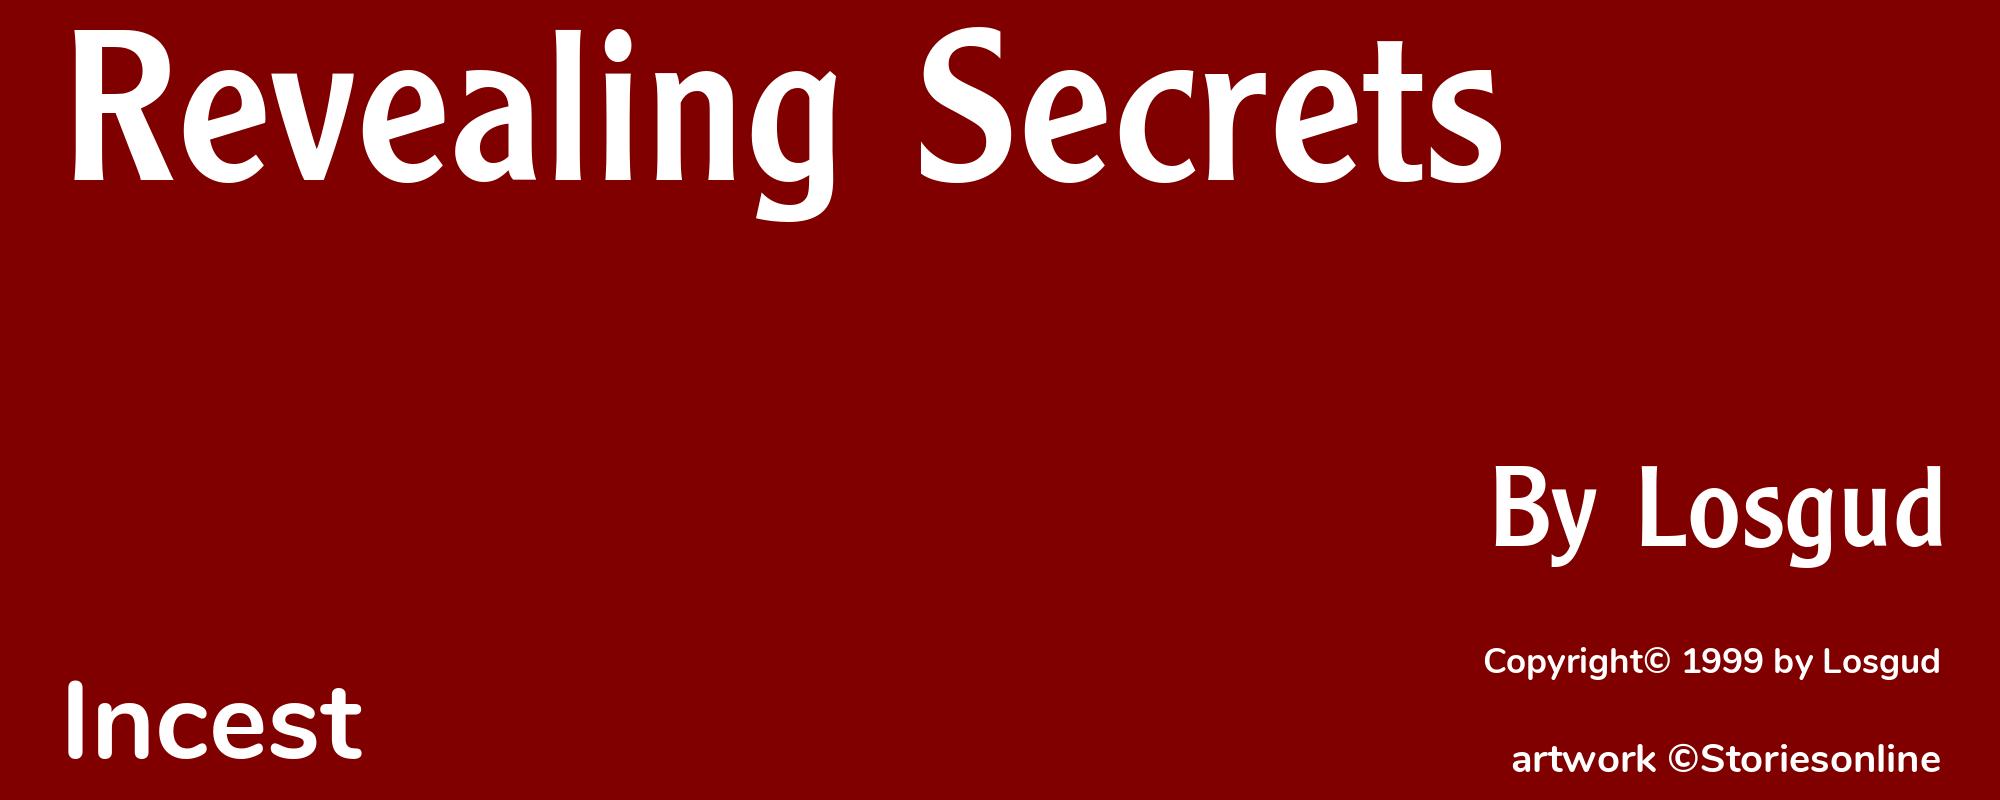 Revealing Secrets - Cover